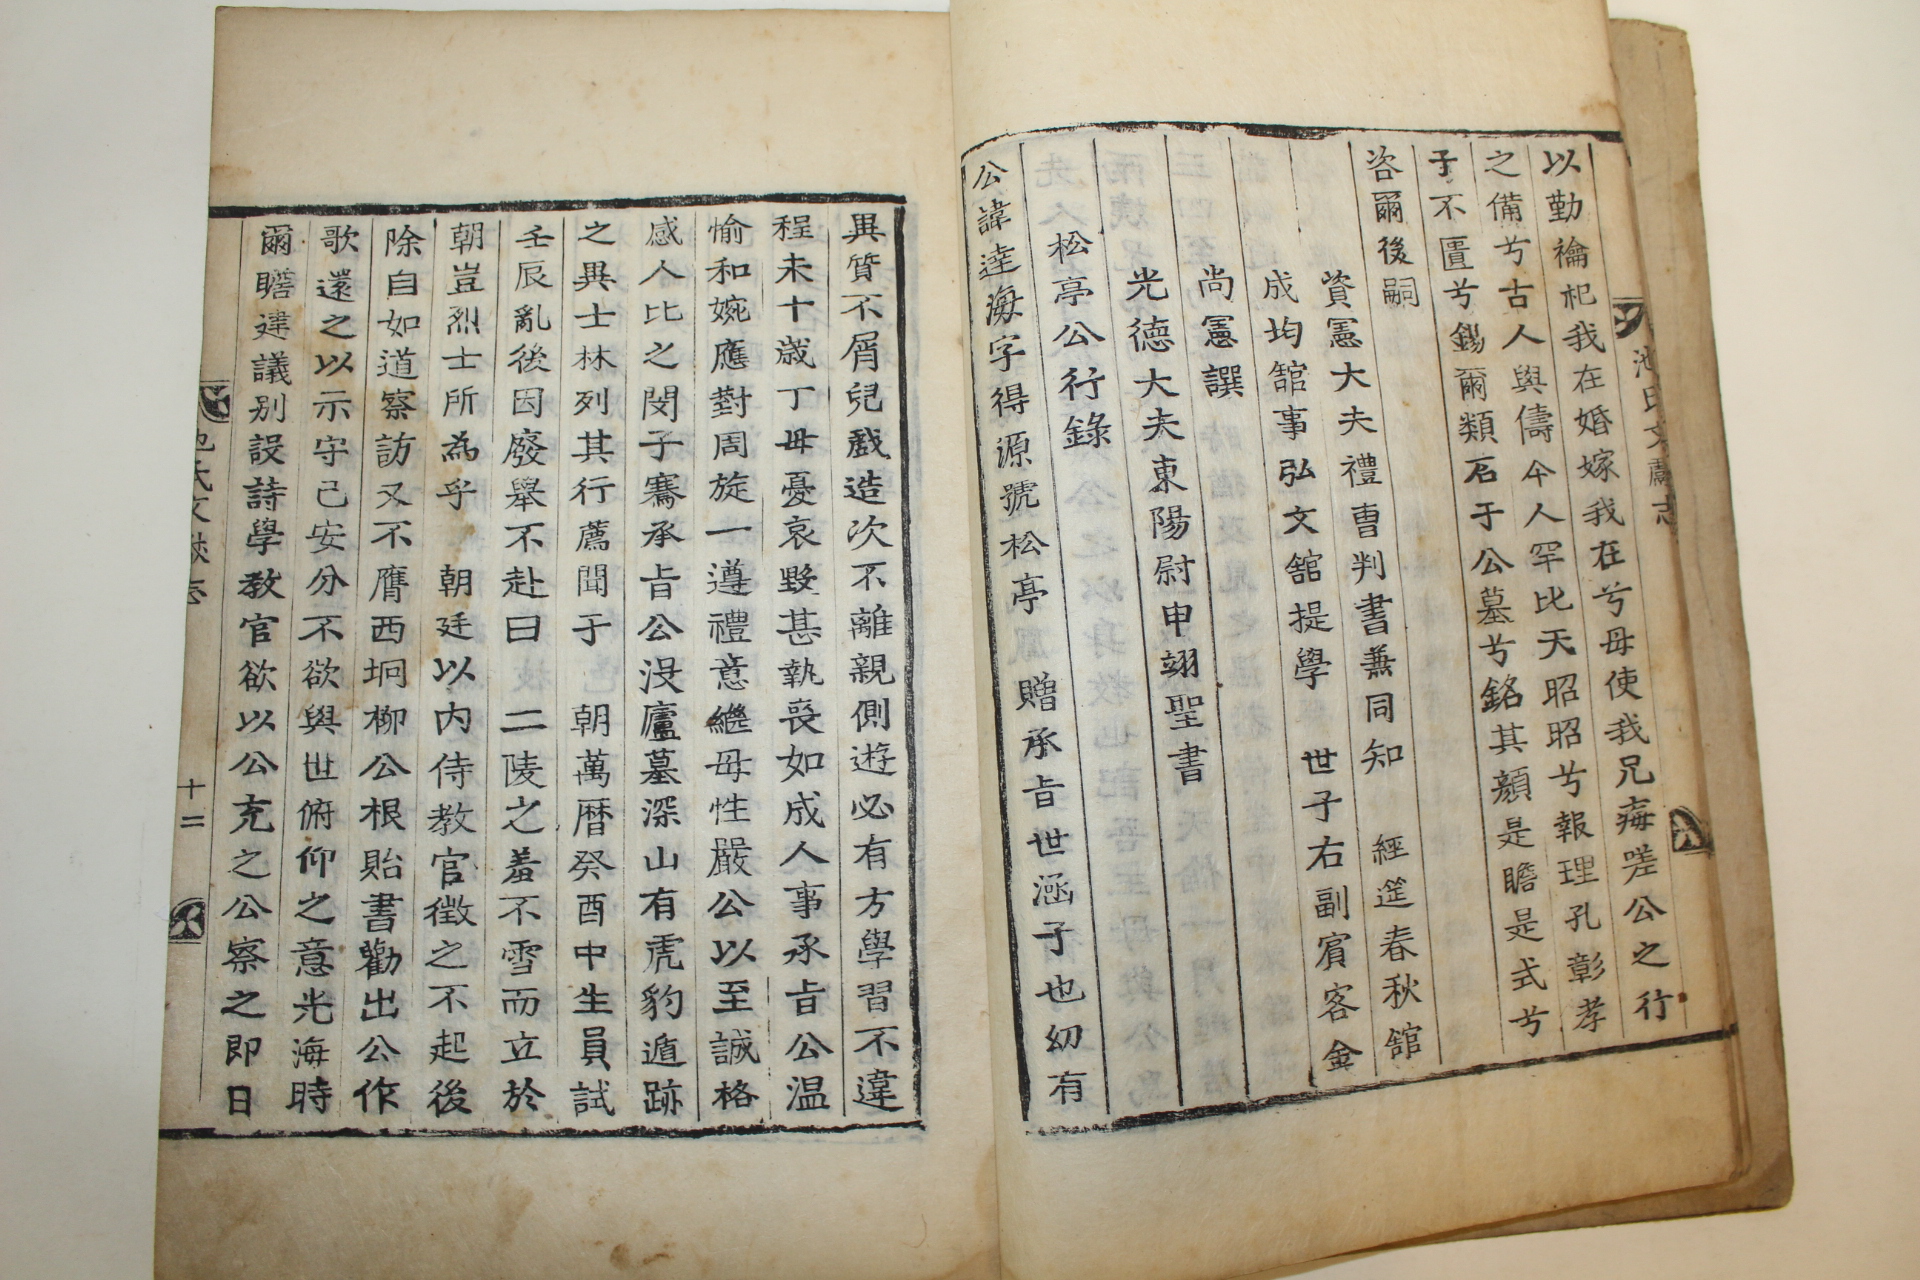 1853년 목활자본 충주지씨문헌지(忠州池氏文獻志) 1책완질